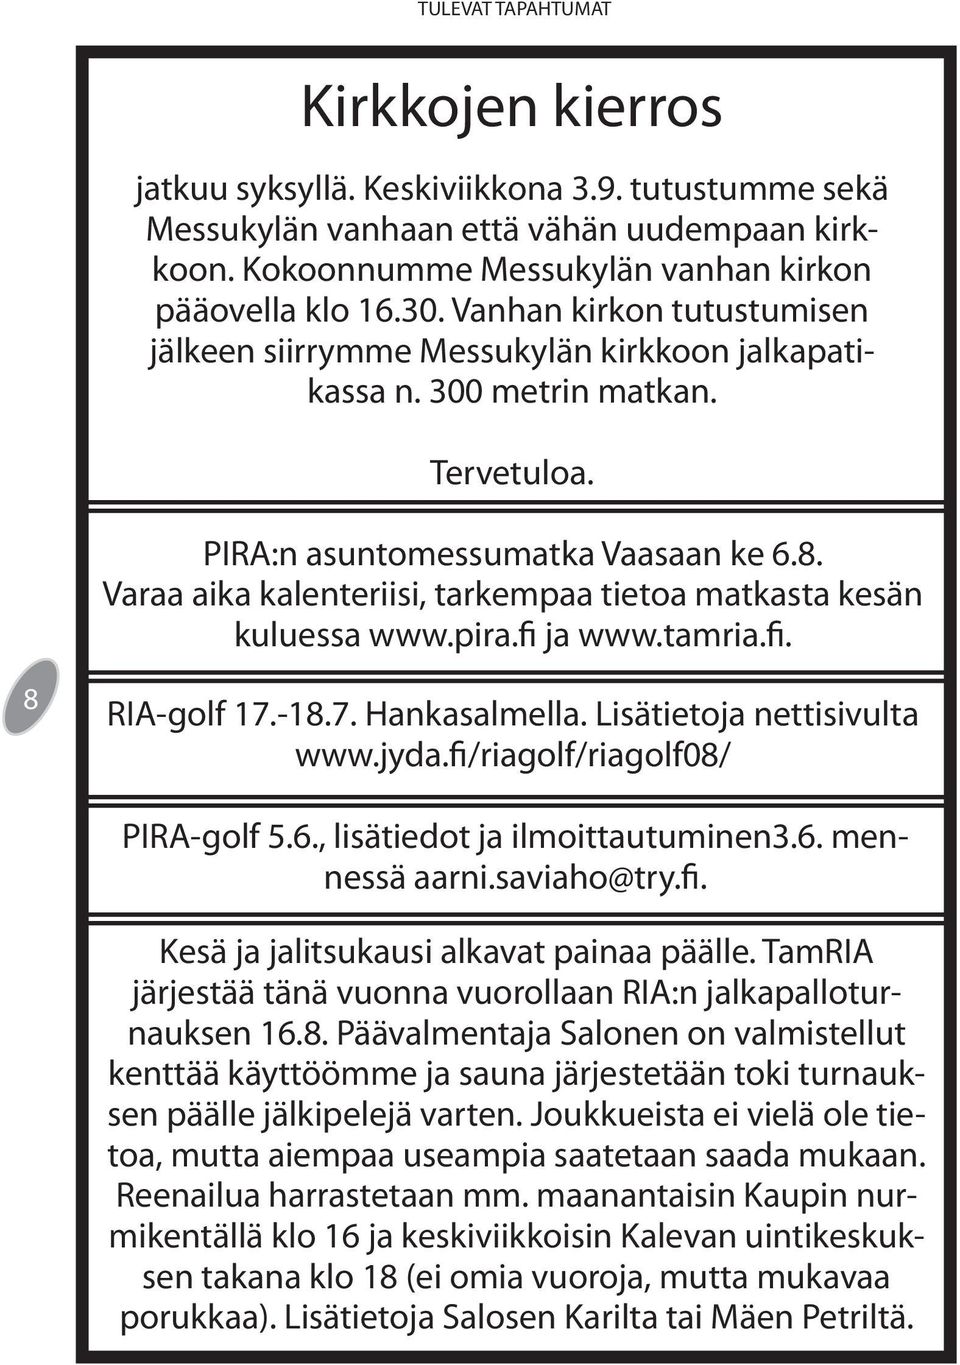 Varaa aika kalenteriisi, tarkempaa tietoa matkasta kesän kuluessa www.pira.fi ja www.tamria.fi. 8 RIA-golf 17.-18.7. Hankasalmella. Lisätietoja nettisivulta www.jyda.fi/riagolf/riagolf08/ PIRA-golf 5.